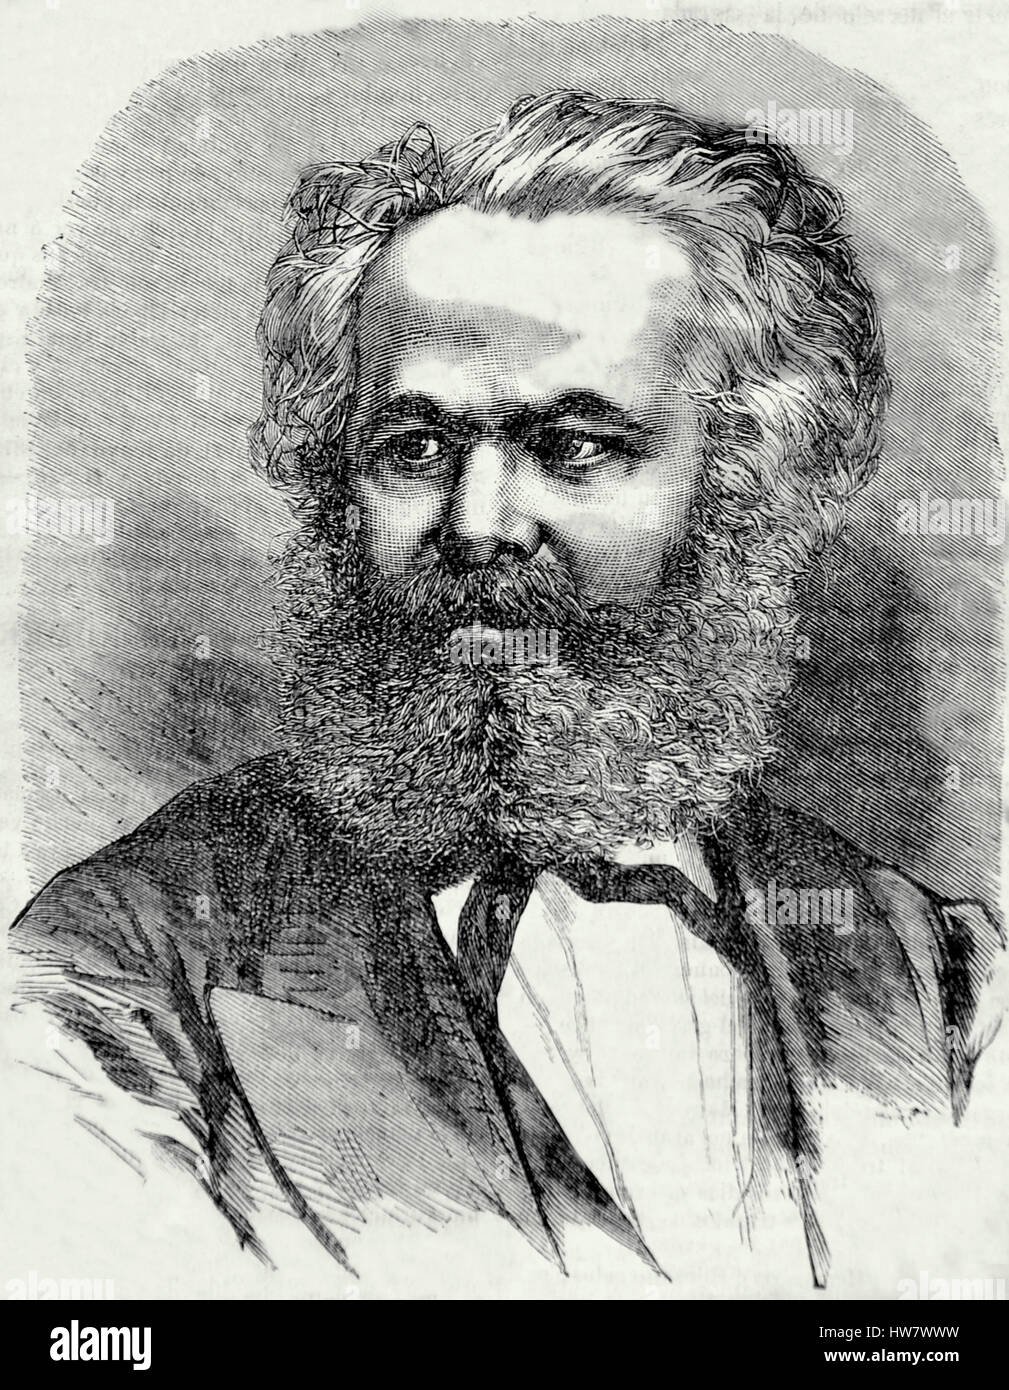 Karl Marx (1818-1883) 19. Siècle. Philosophe, économiste et socialiste révolutionnaire.le manifeste communiste. La gravure. Banque D'Images